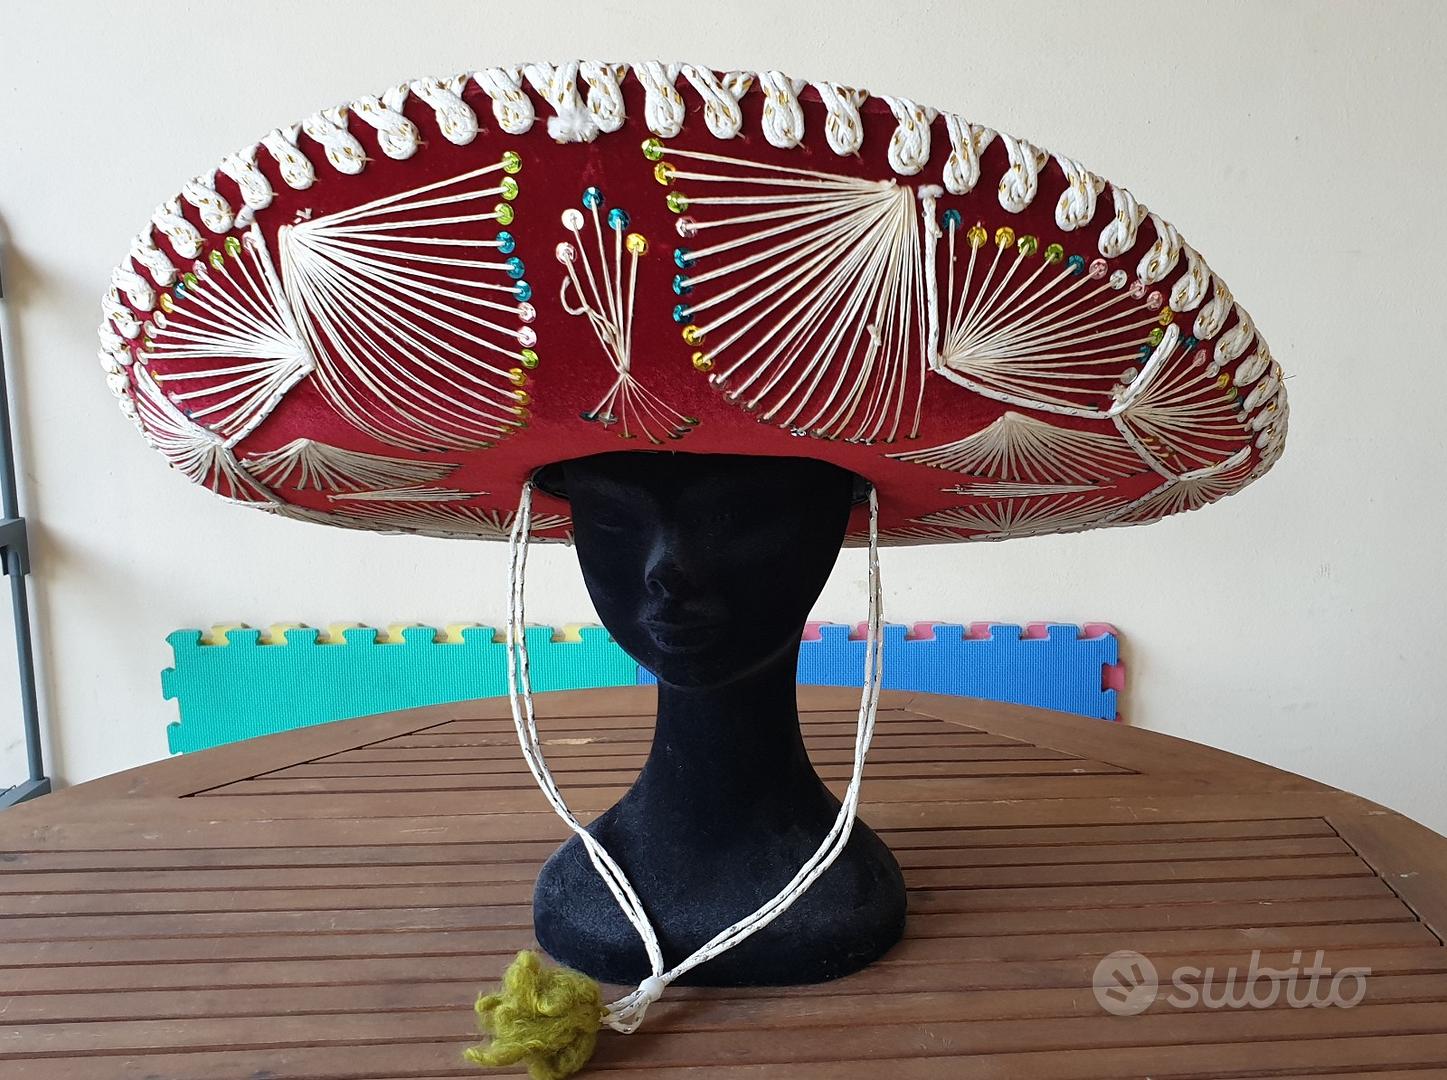 Sombrero messicano originale nuovo da collezione - Abbigliamento e